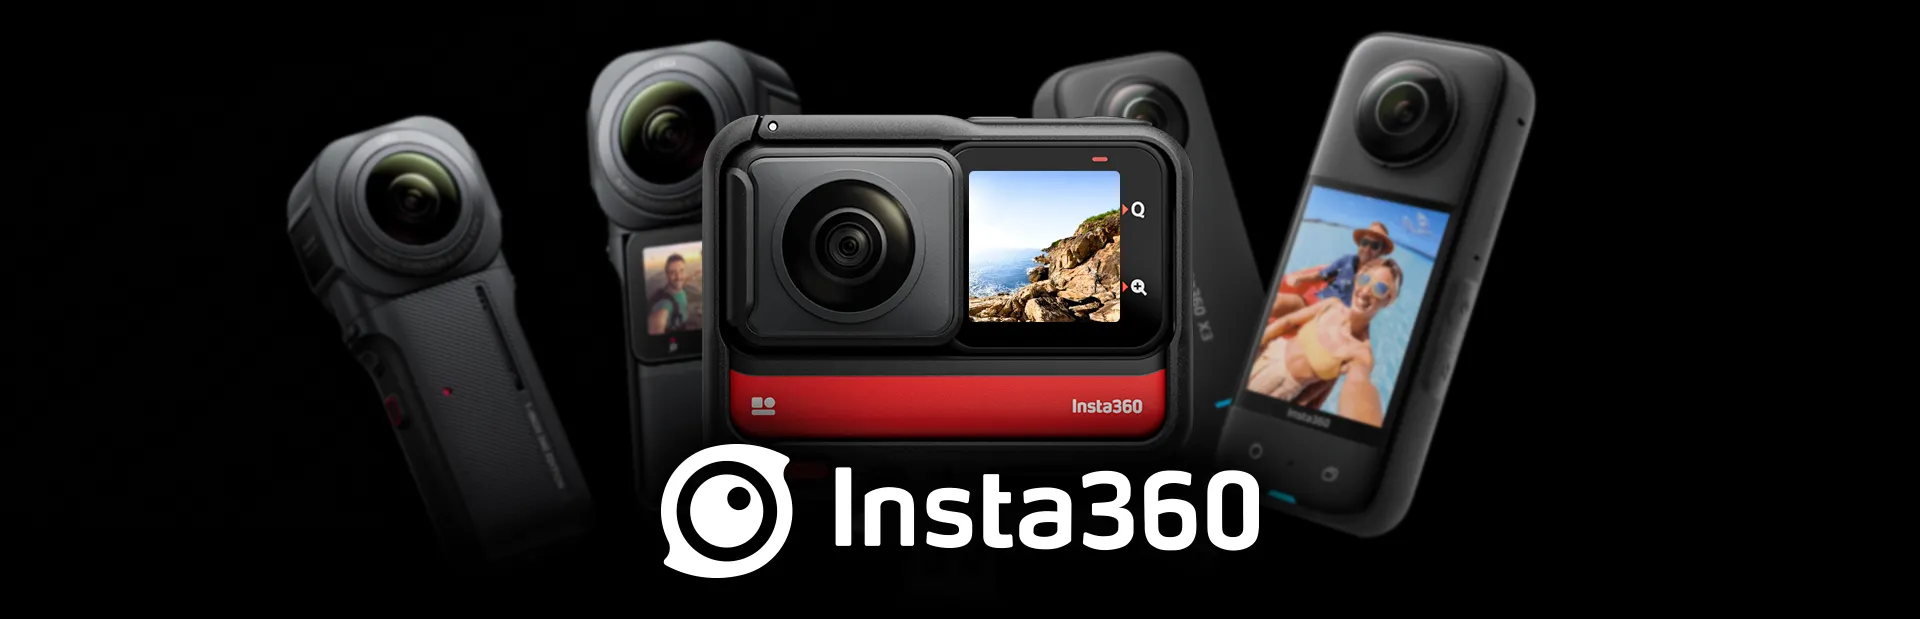 Insta360 Action Cam